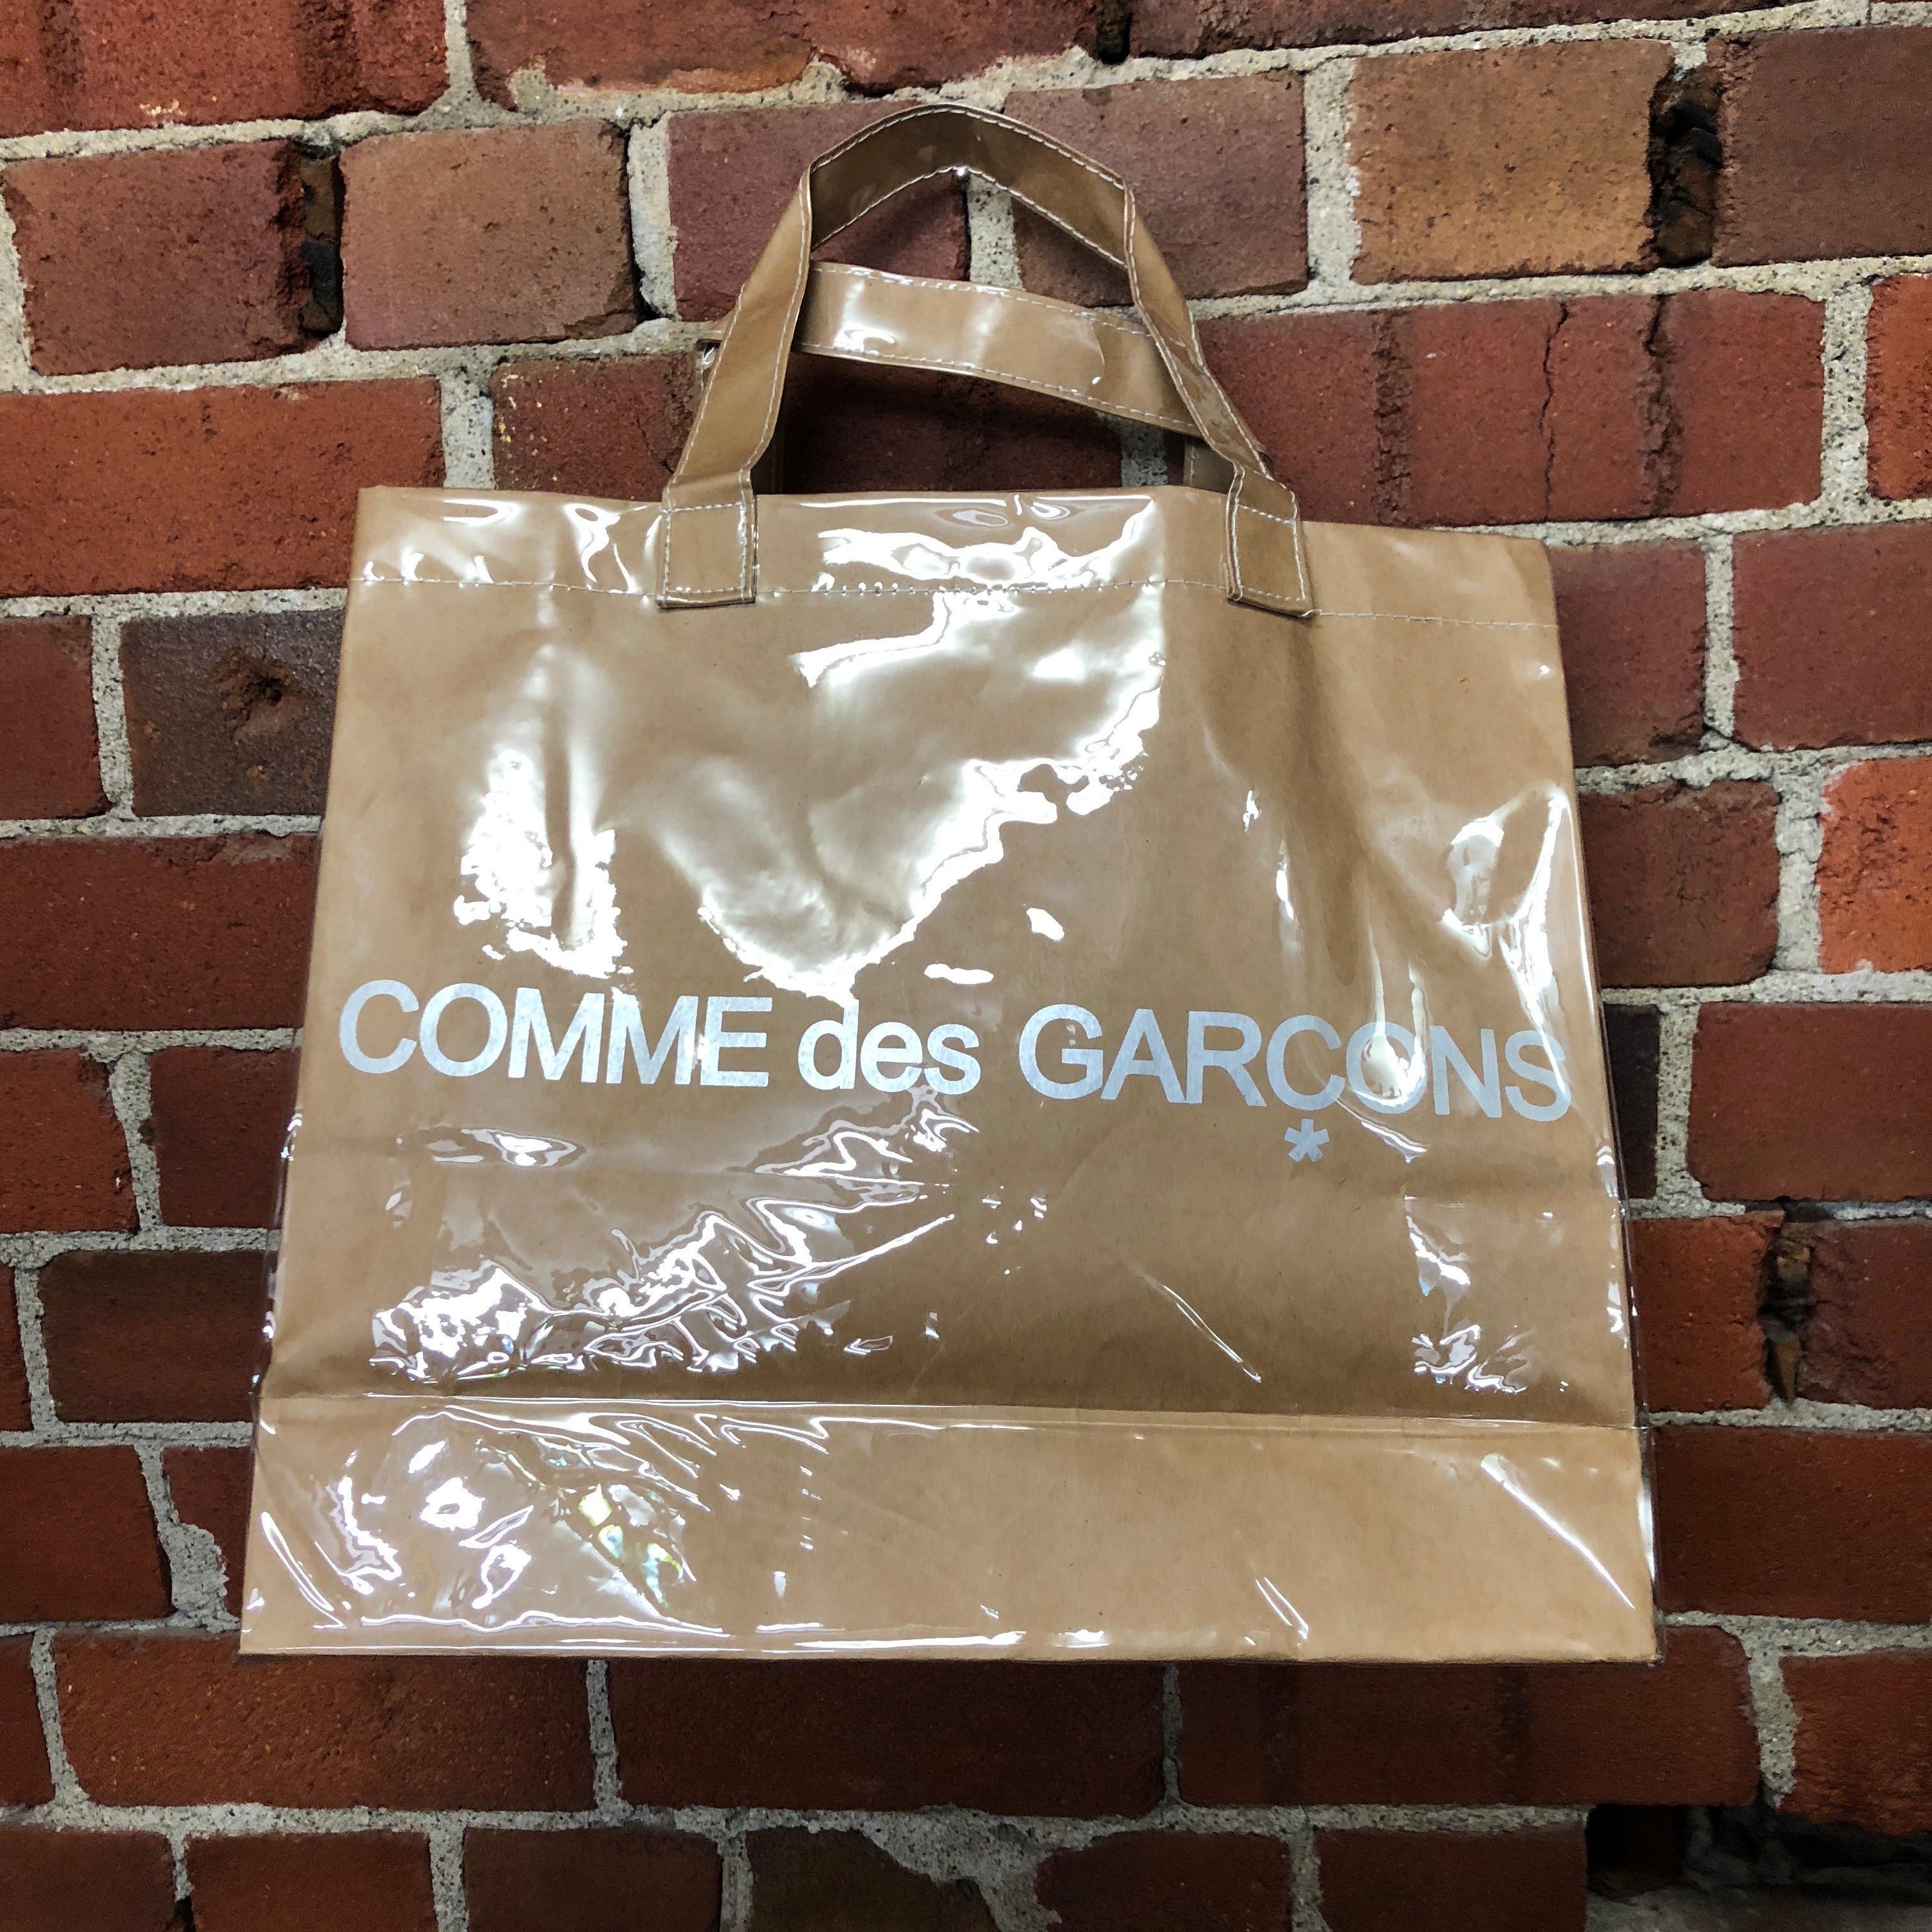 COMME DES GARCONS PVC covered paper handbag